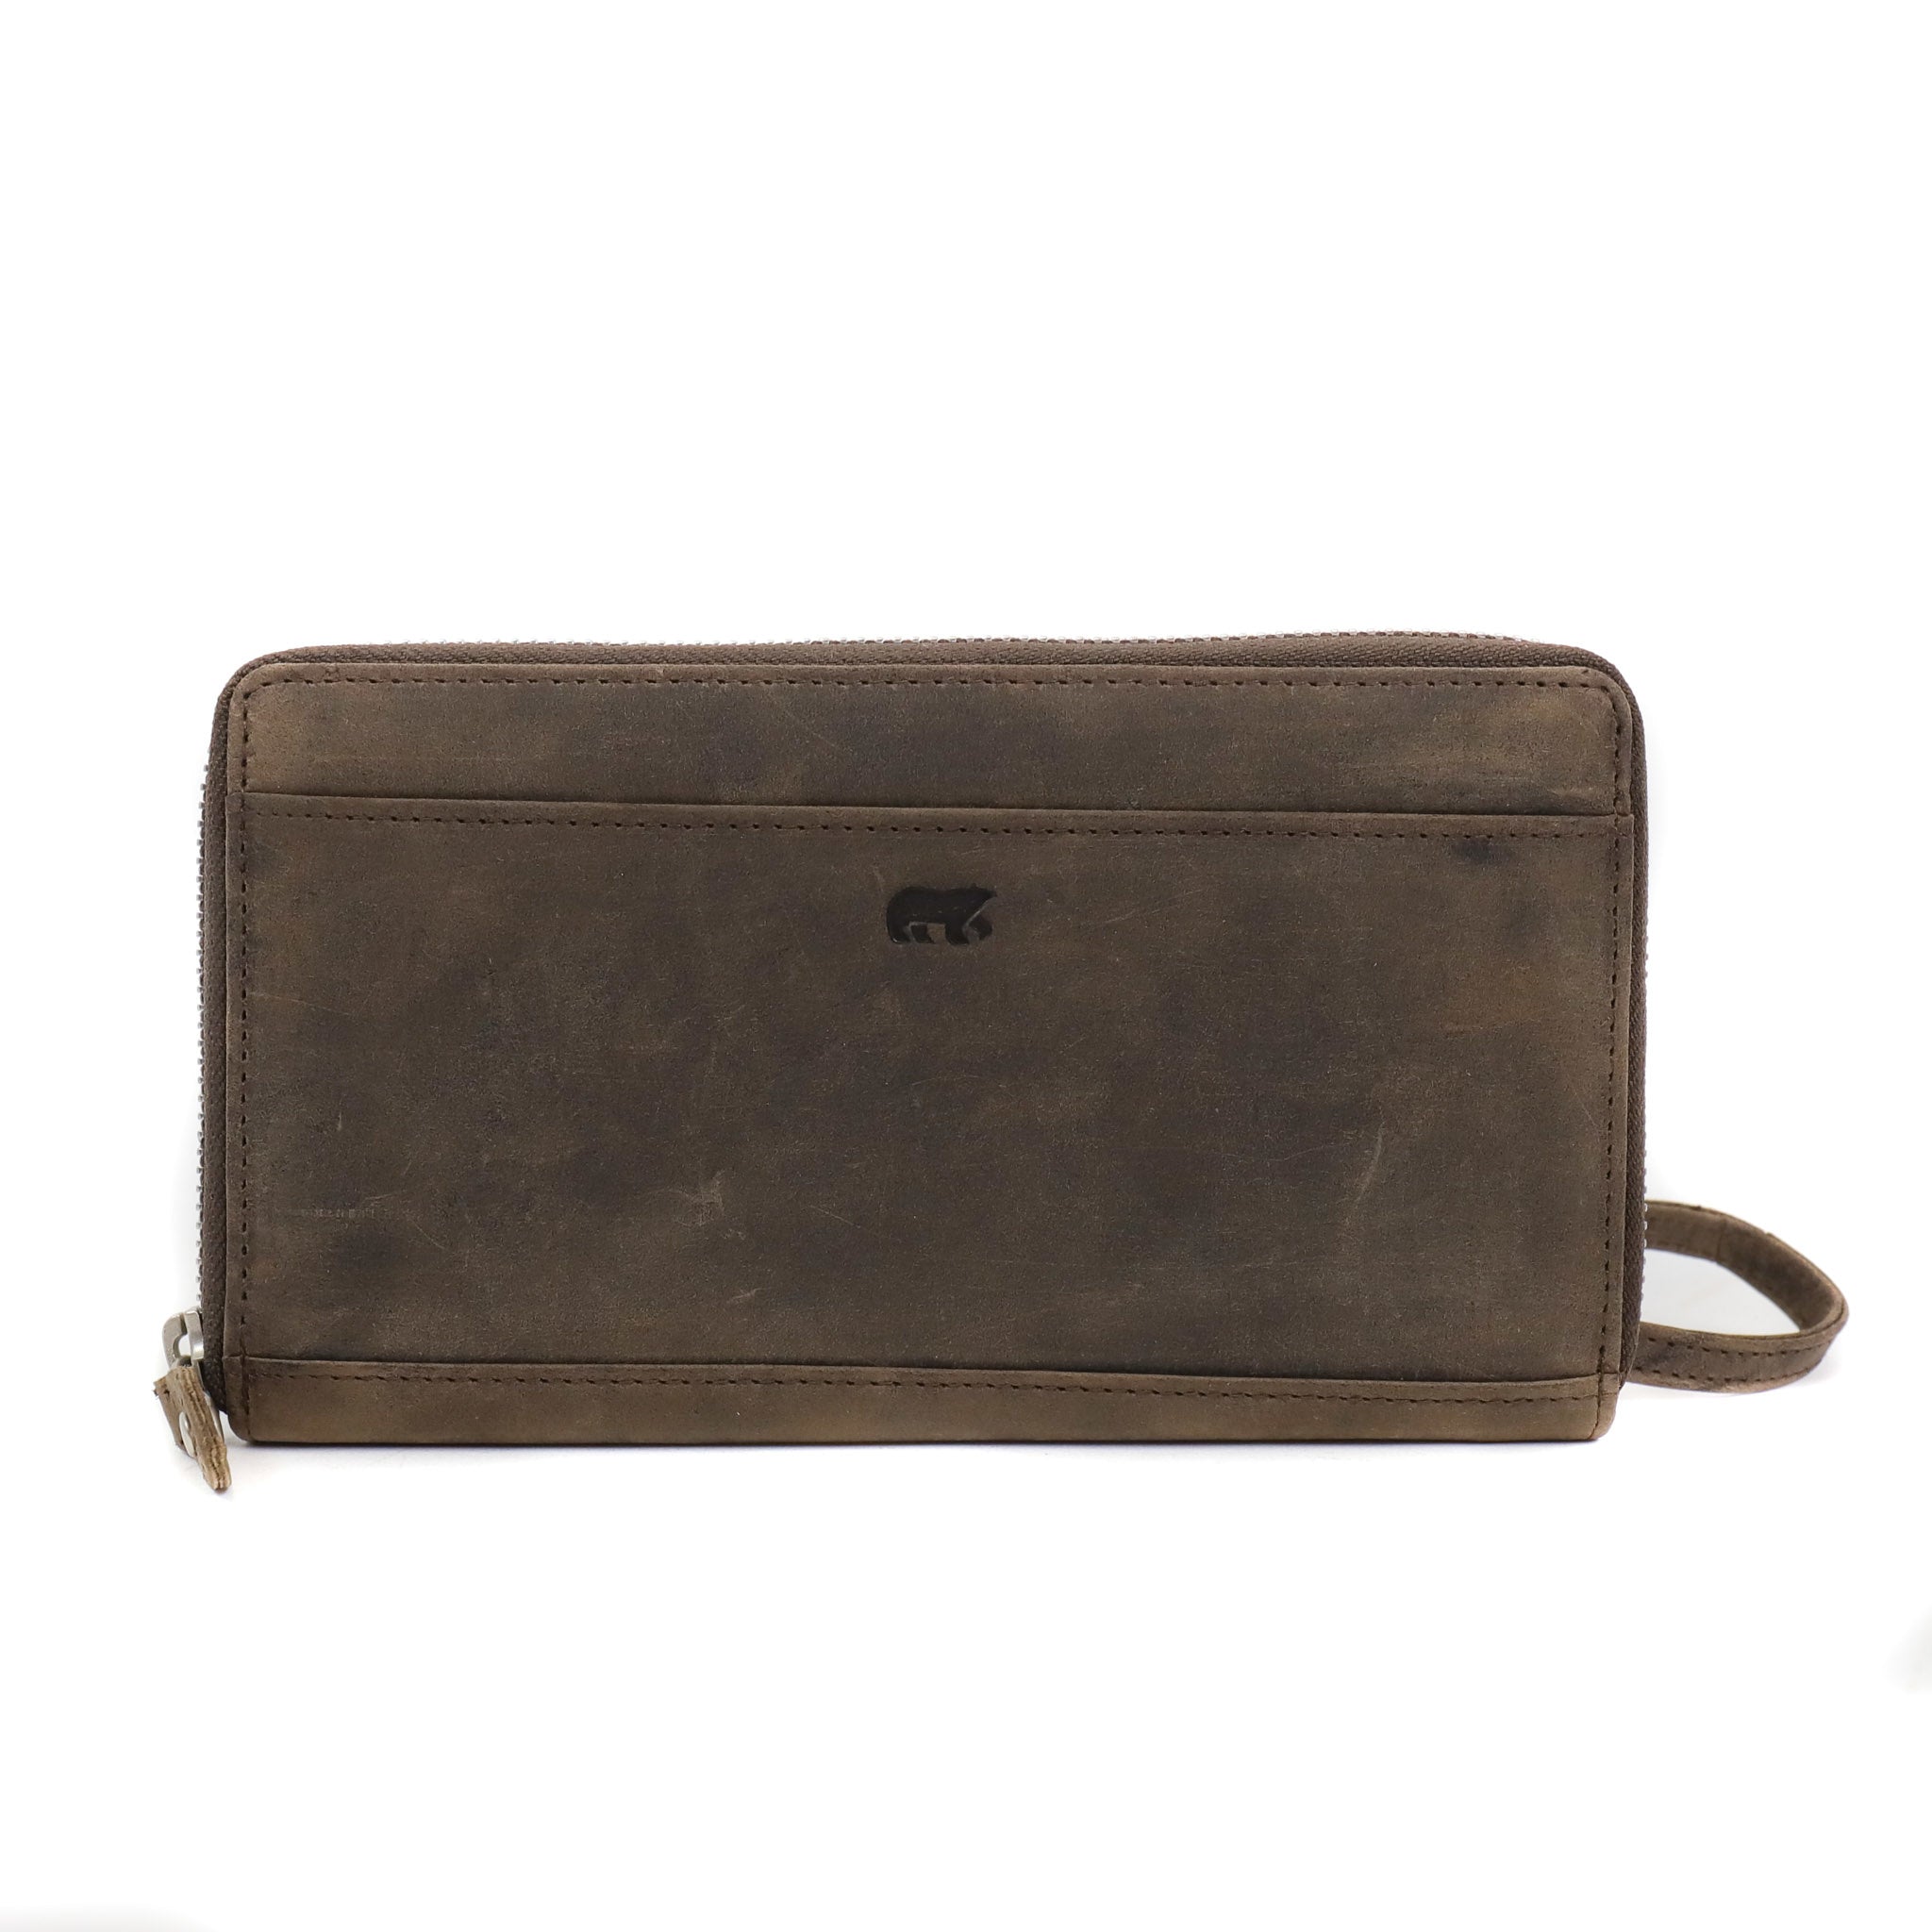 Zipper wallet 'Matilda' brown - HD 9165